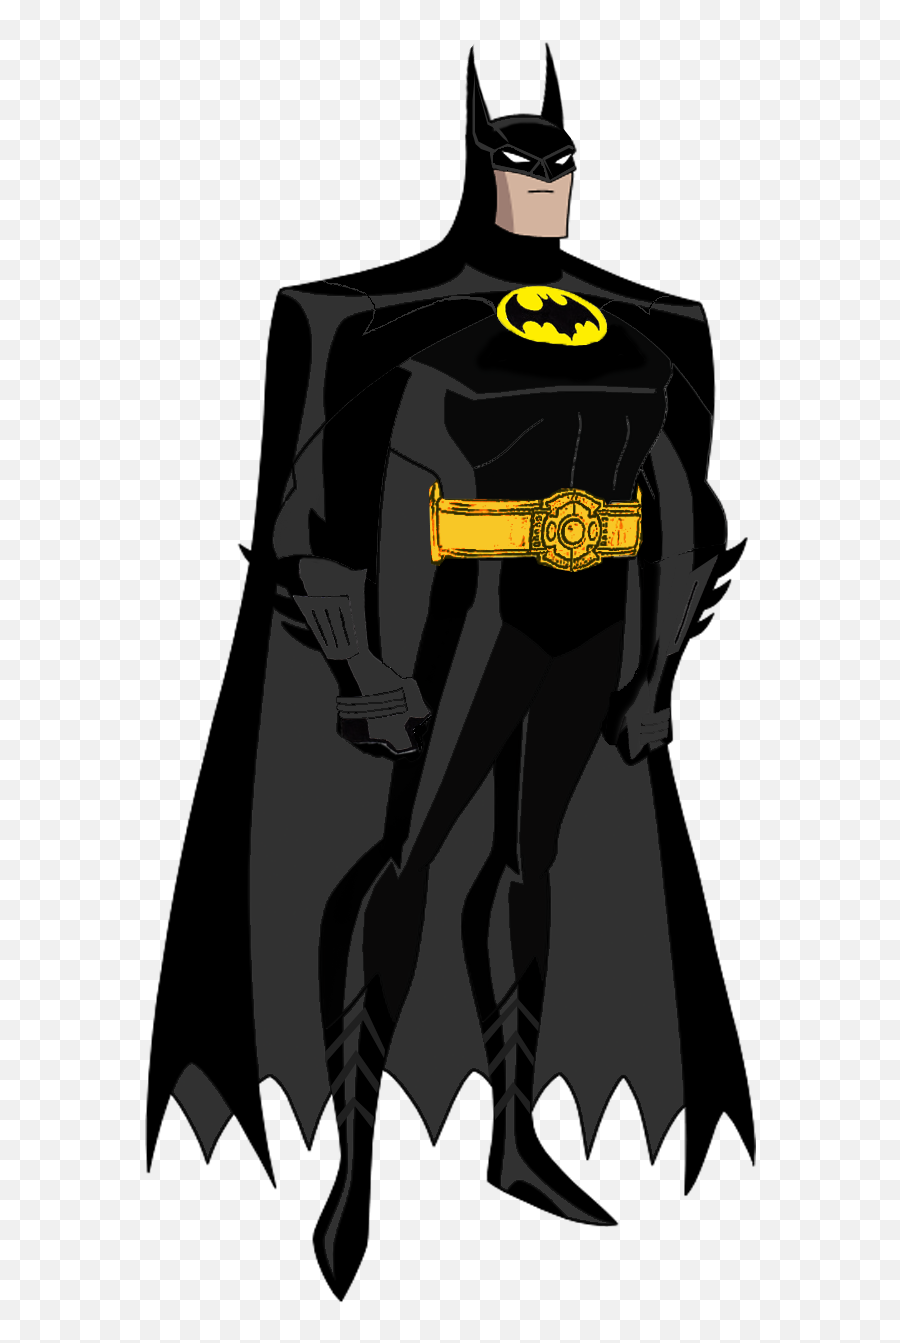 Batman 1989 Png Clipart Images Free Download - 1 Files Emoji,Batman Emoji